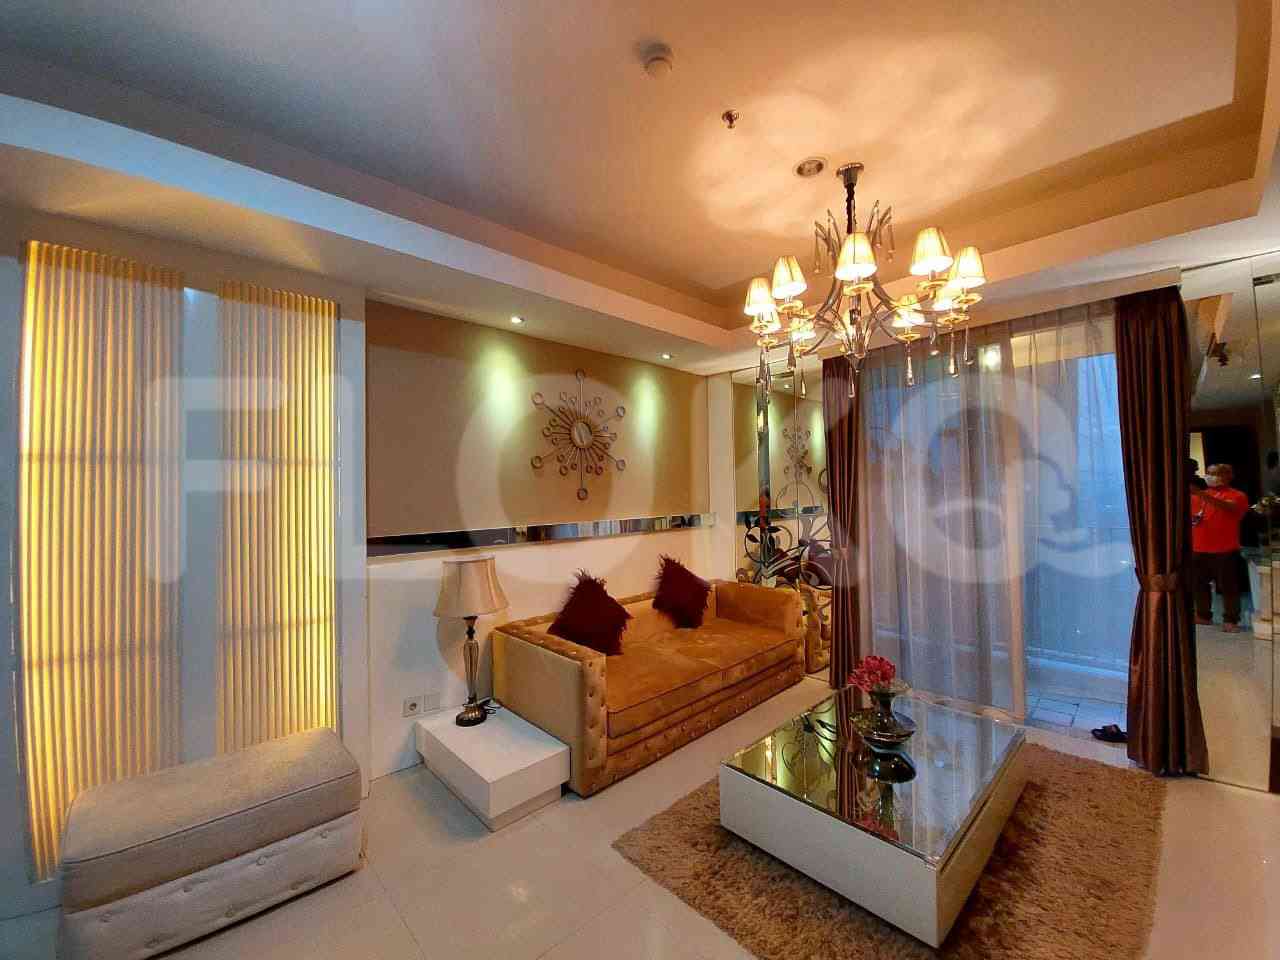 2 Bedroom on 14th Floor for Rent in Casa Grande - fte9d2 9